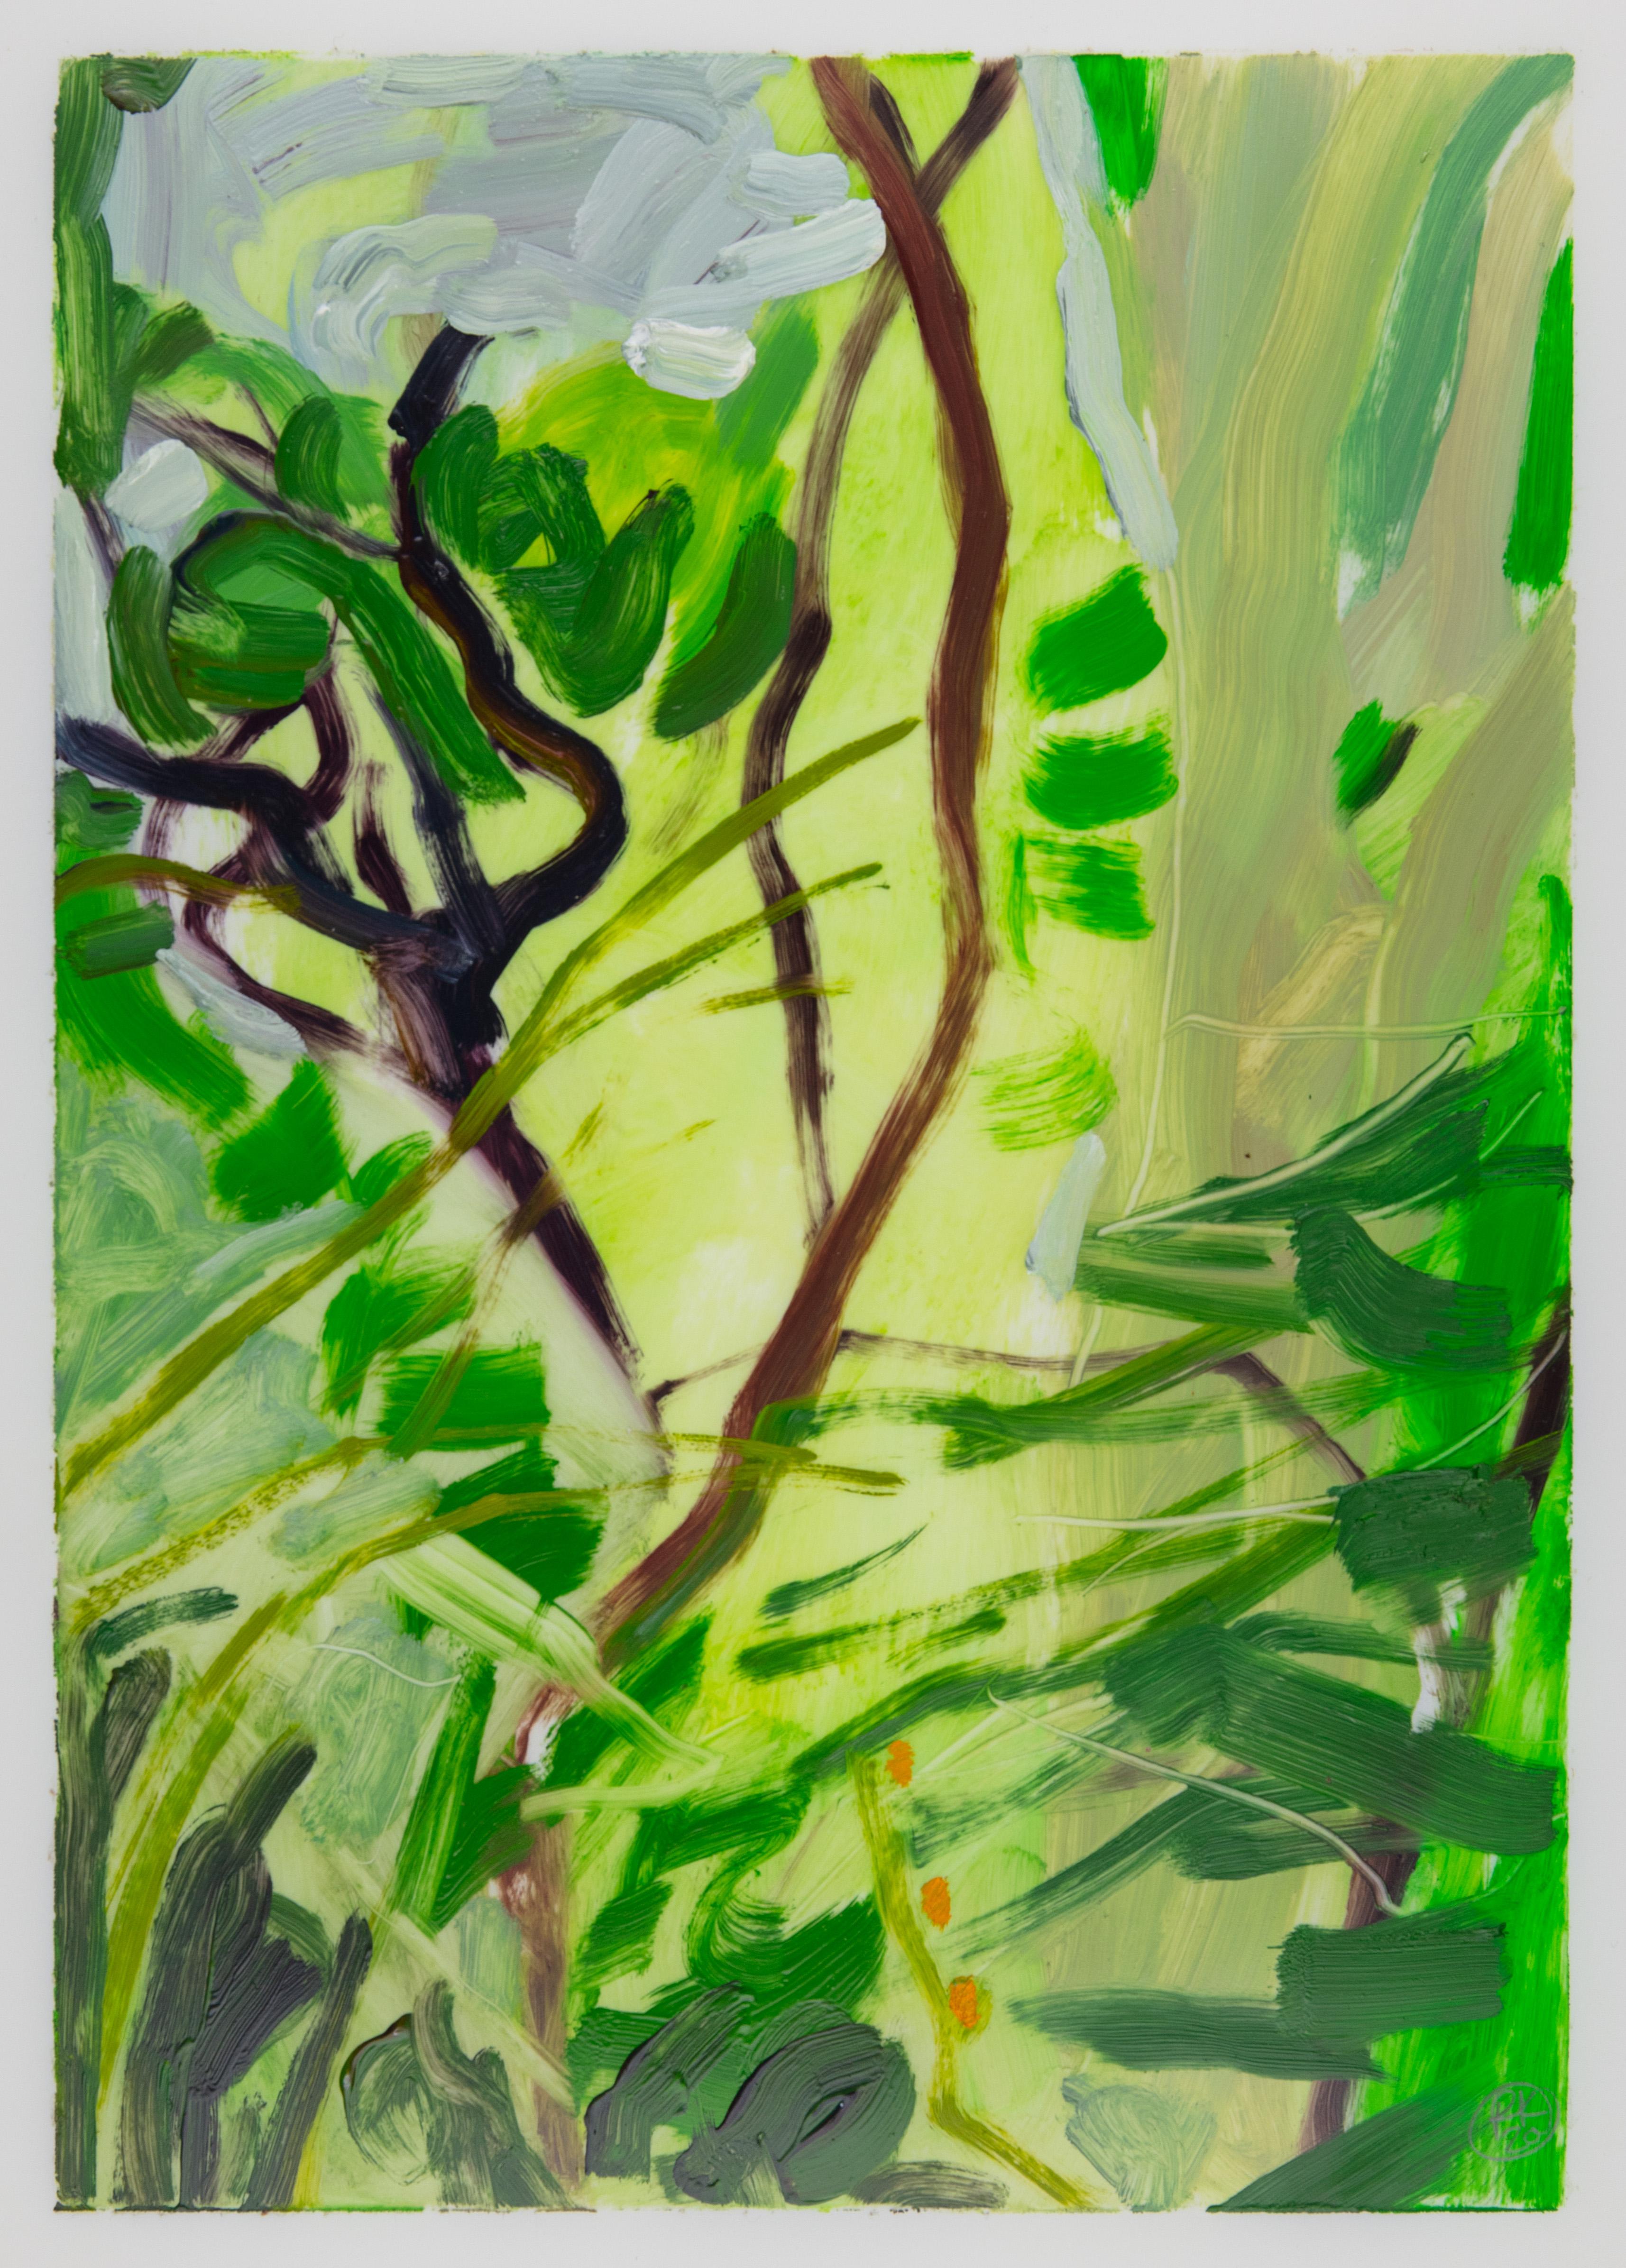 Rachelle Krieger Landscape Painting – Lockdown Landscape III, leuchtend grüne und braune abstrakte Pflanzen, surreale Szene